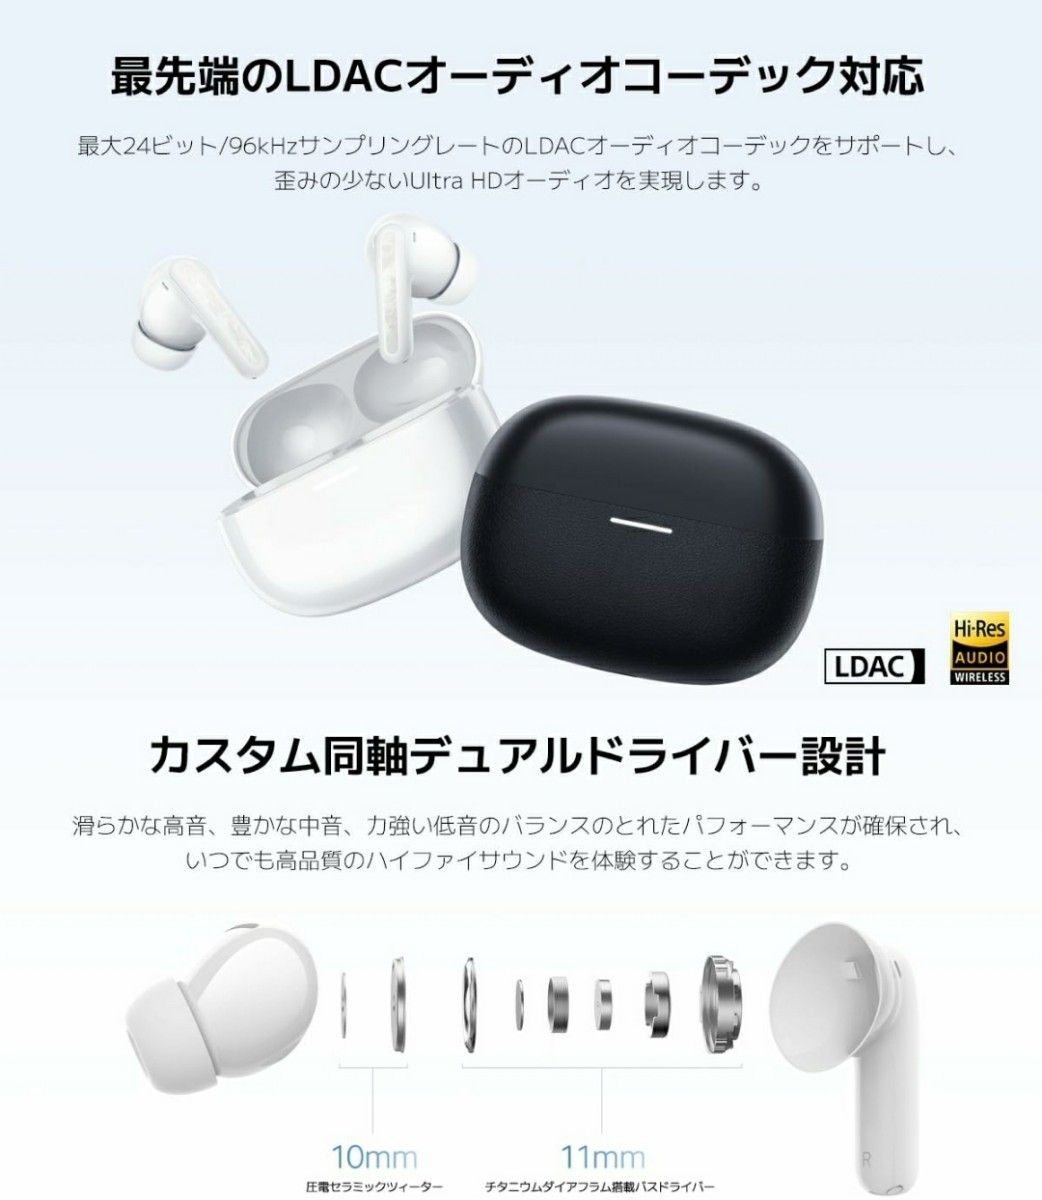 【最安値】Redmi Buds 5 Pro ノイズキャンセリング 外部音取り込み ワイヤレスイヤホン Bluetooth ハイレゾ